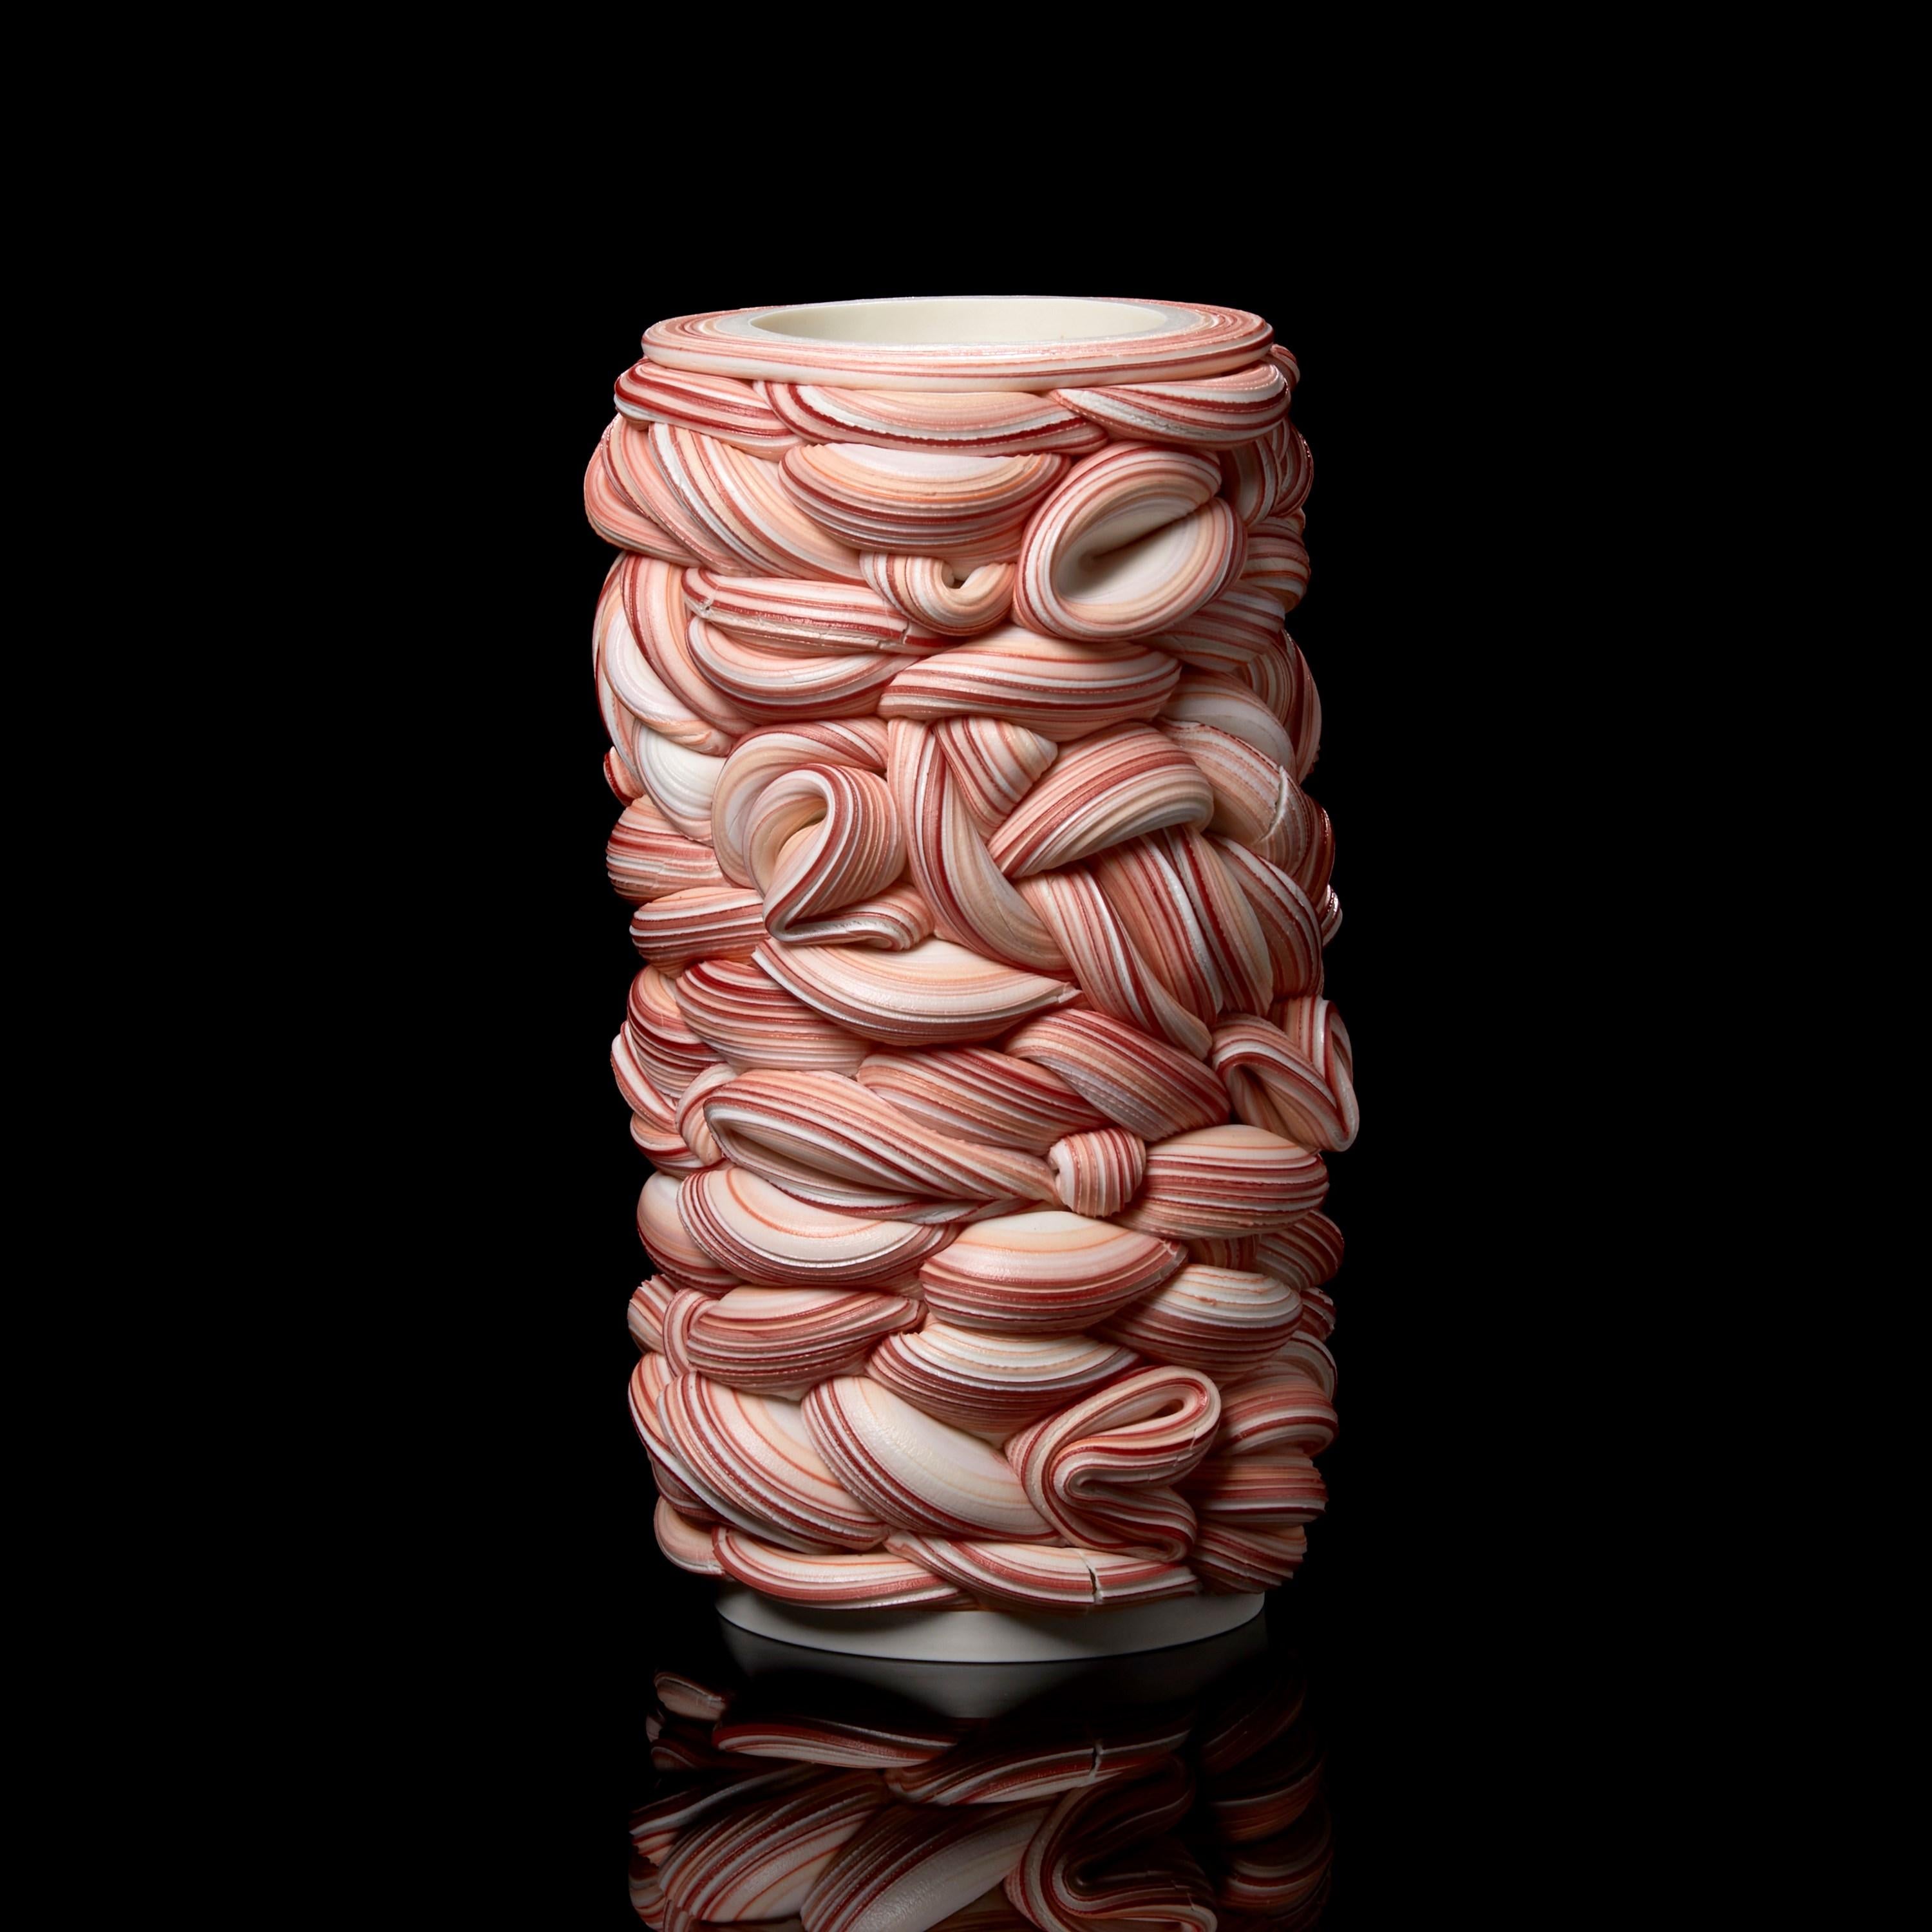 British Banded Fold II, a Pink Parian Porcelain Sculptural Vessel by Steven Edwards